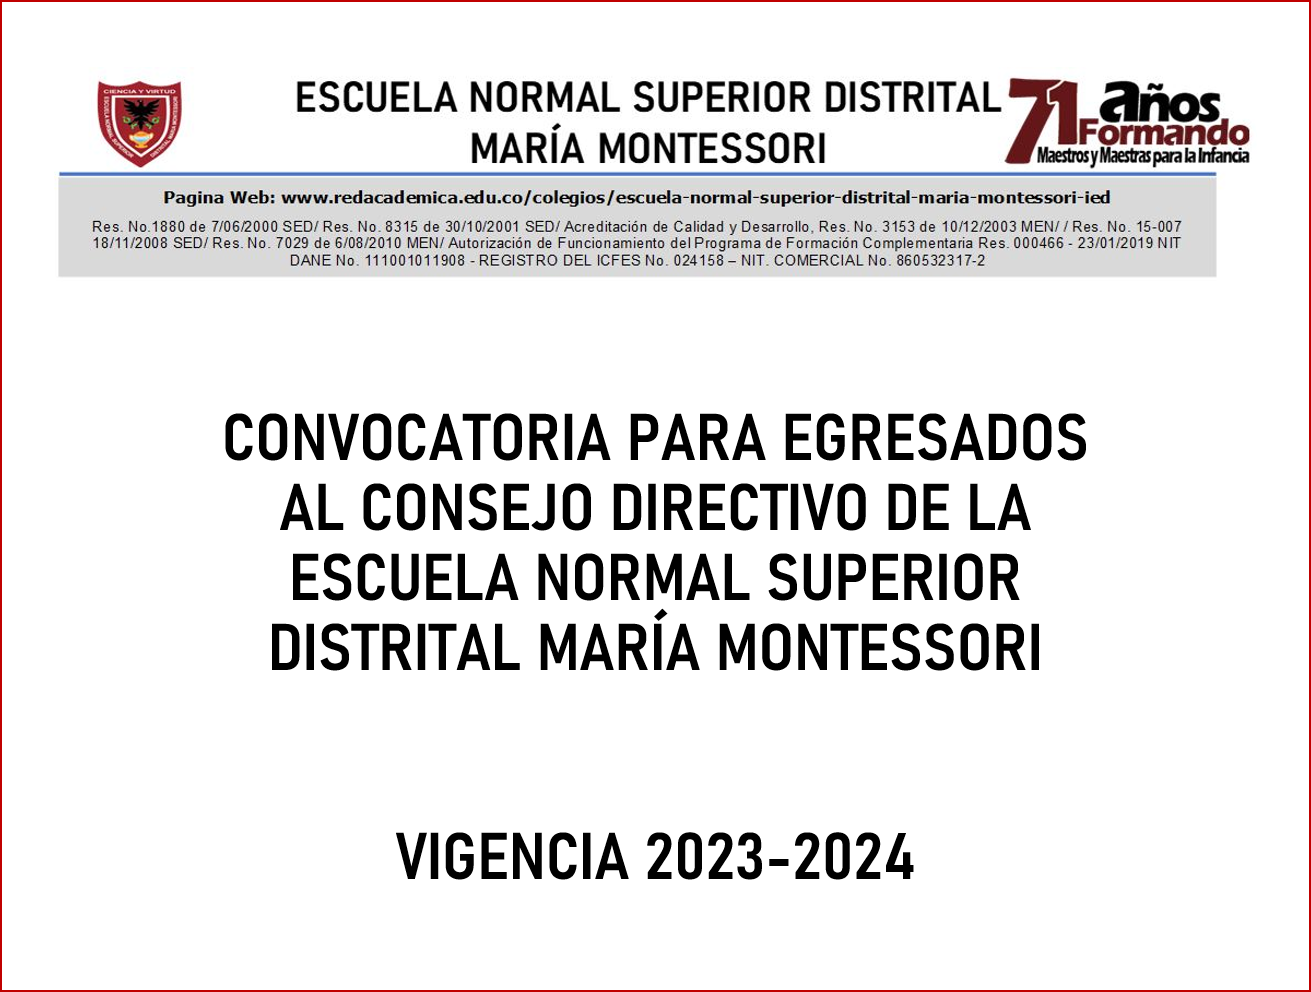 CONVOCATORIA PARA EGRESADOS AL CONSEJO DIRECTIVO DE LA ESCUELA NORMAL SUPERIOR DISTRITAL MARÍA MONTESSORI VIGENCIA 2023-2024